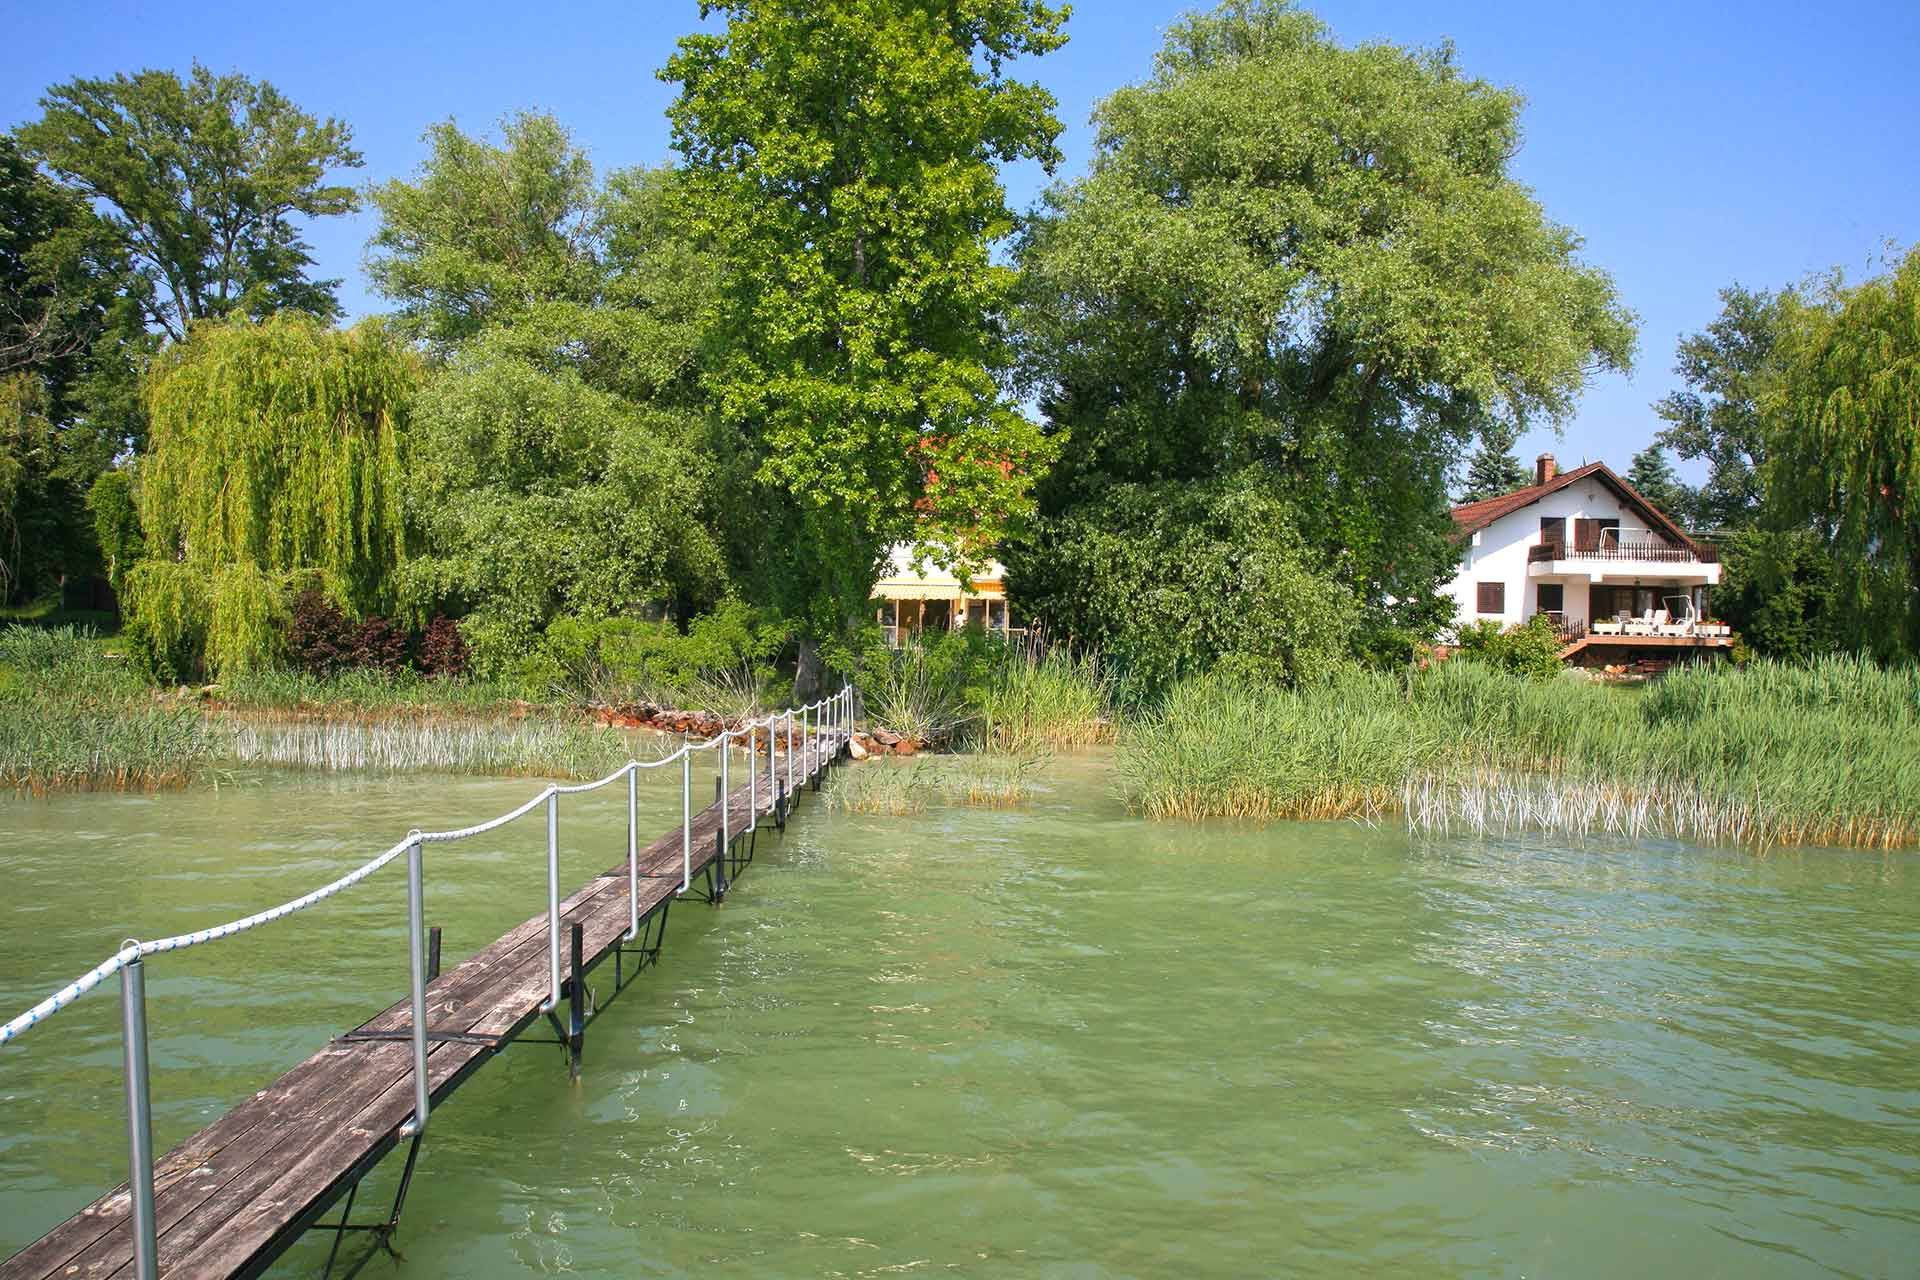 A közvetlen vízparti ingatlan a Balaton partján, a társadalom kiváltságosainak az ismertetőjele